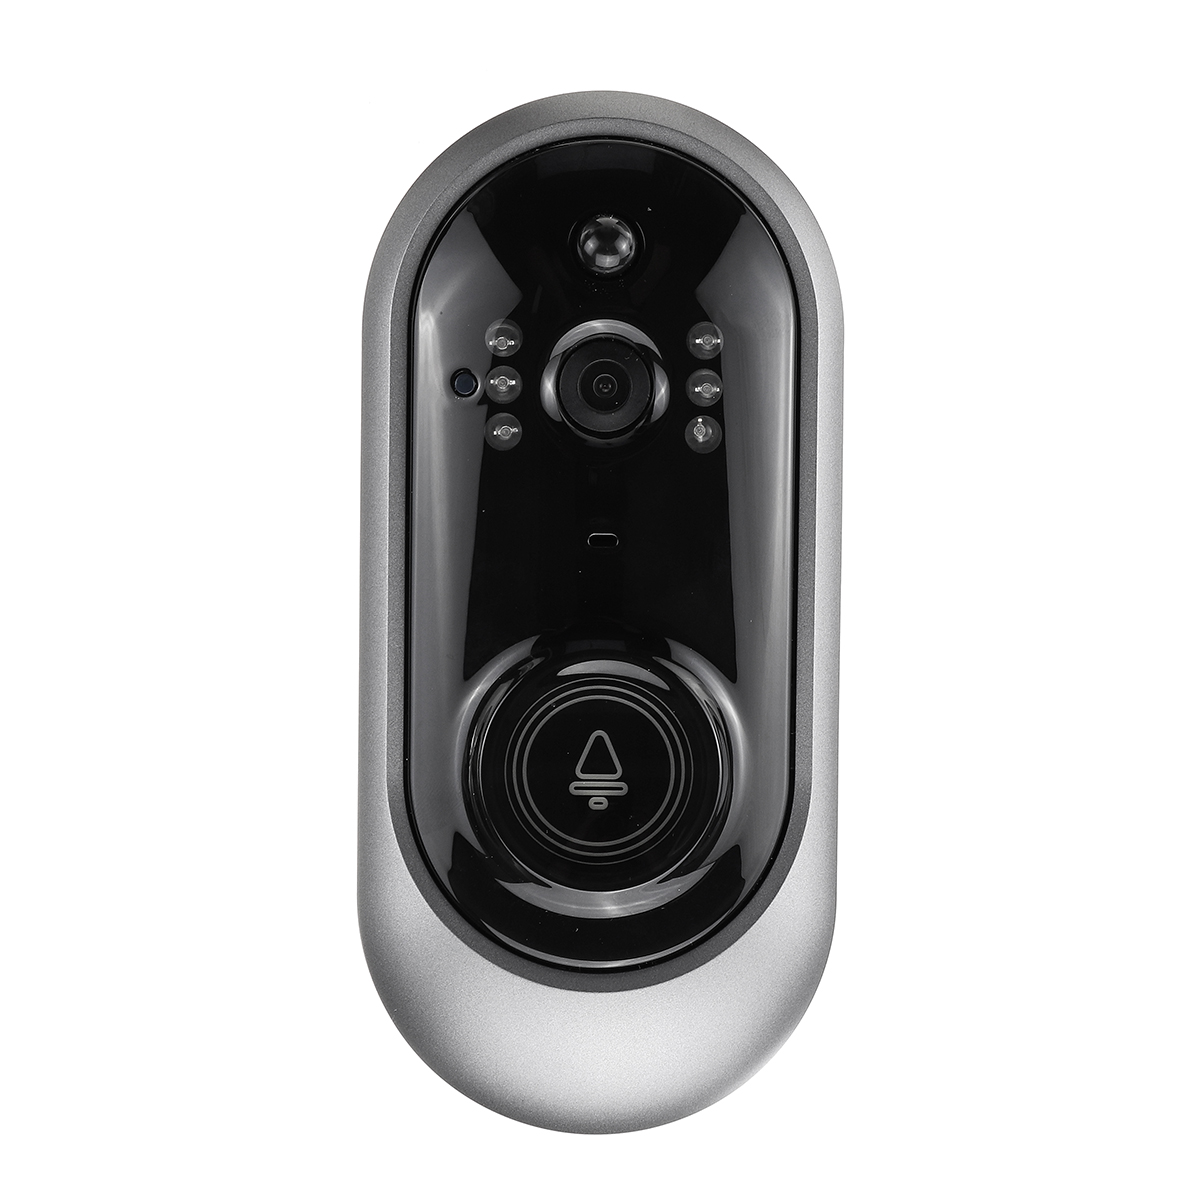 

Wireless WiFi Video Smart Doorbell Smart Phone Door Ring Intercom Camera Bell